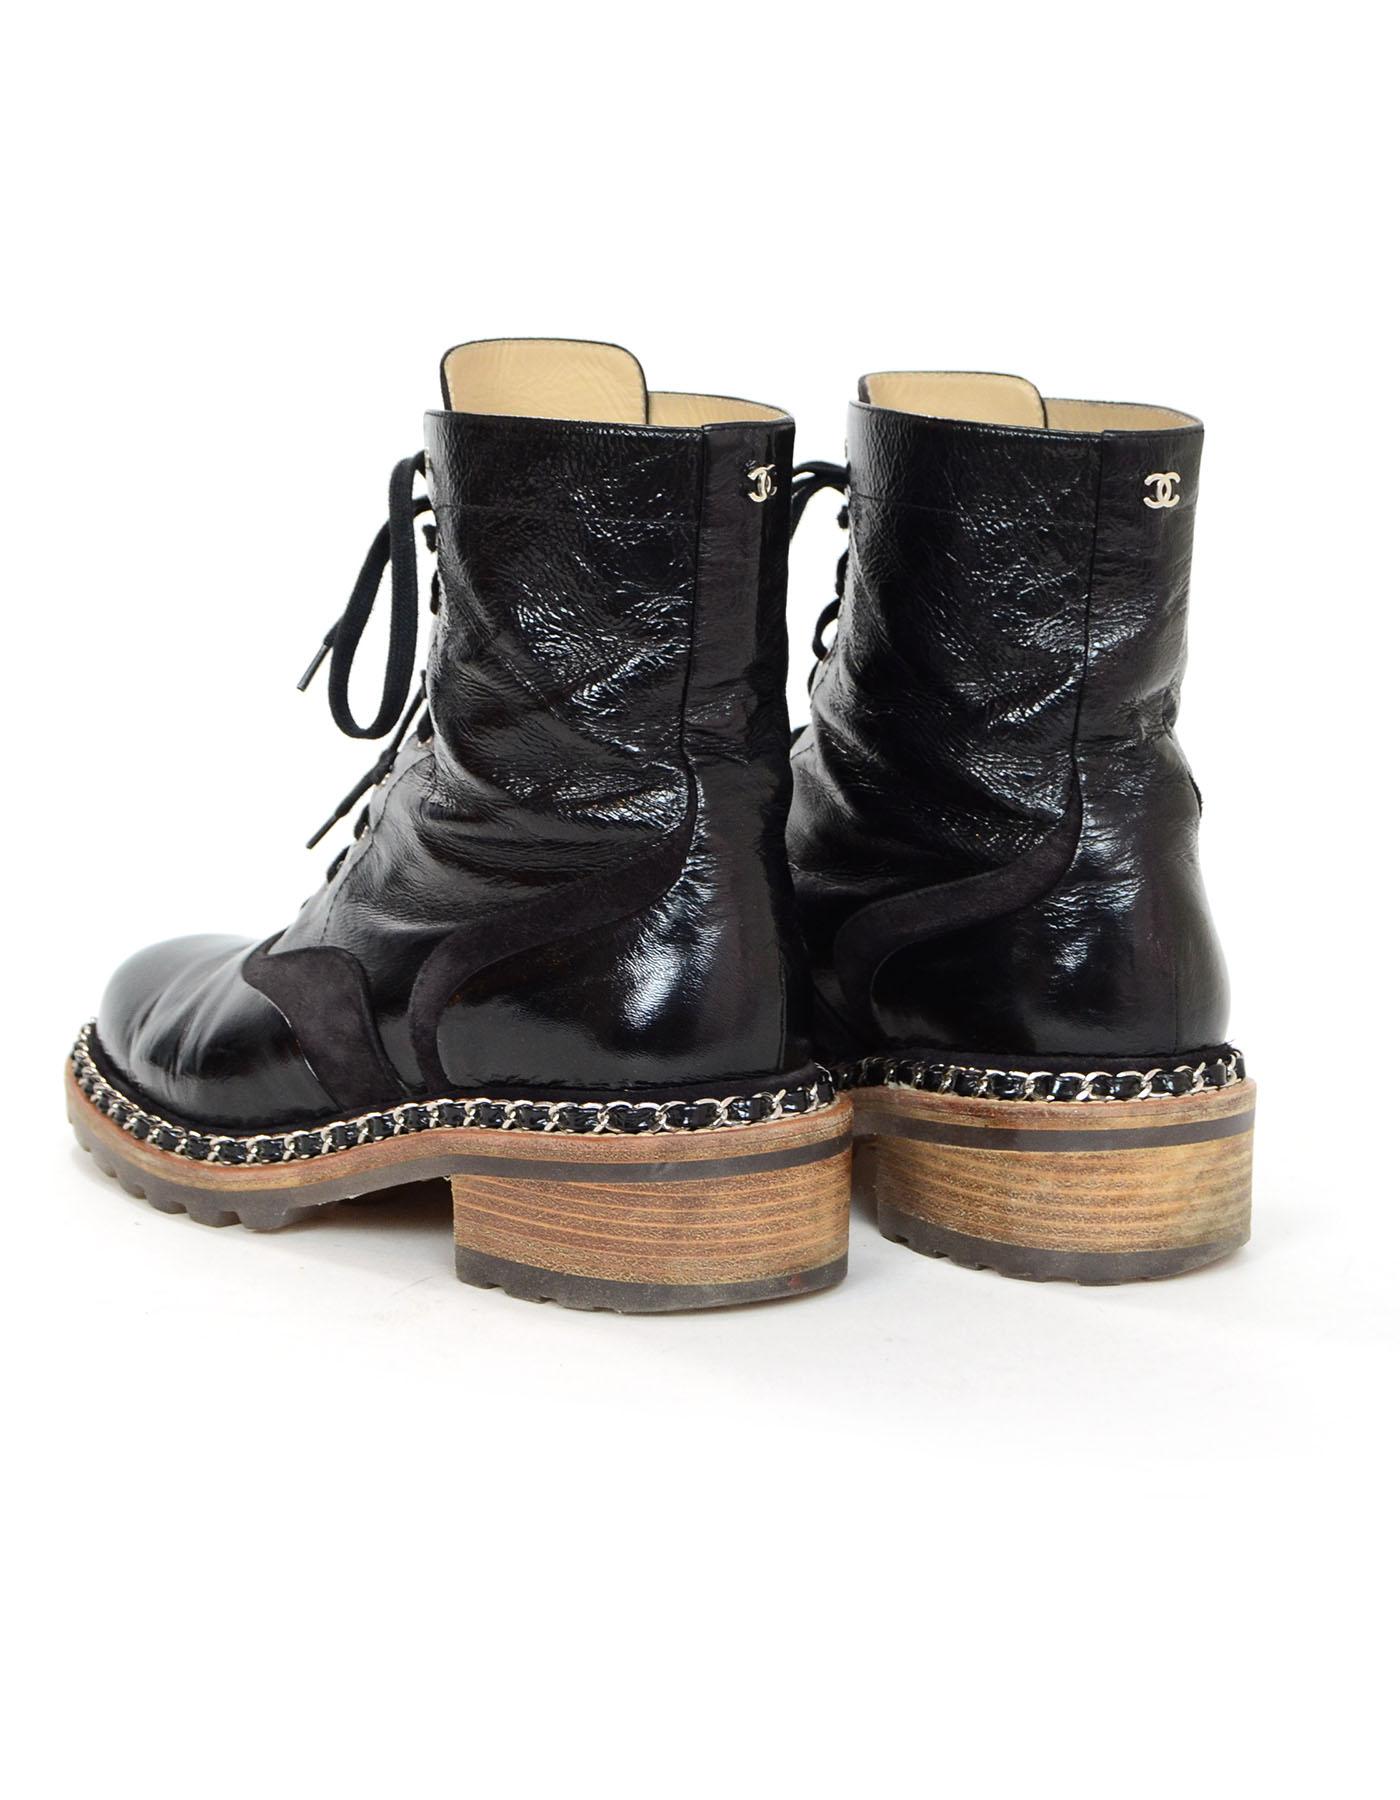 Women's Chanel Black Patent & Chain Trim Boots Sz 40.5